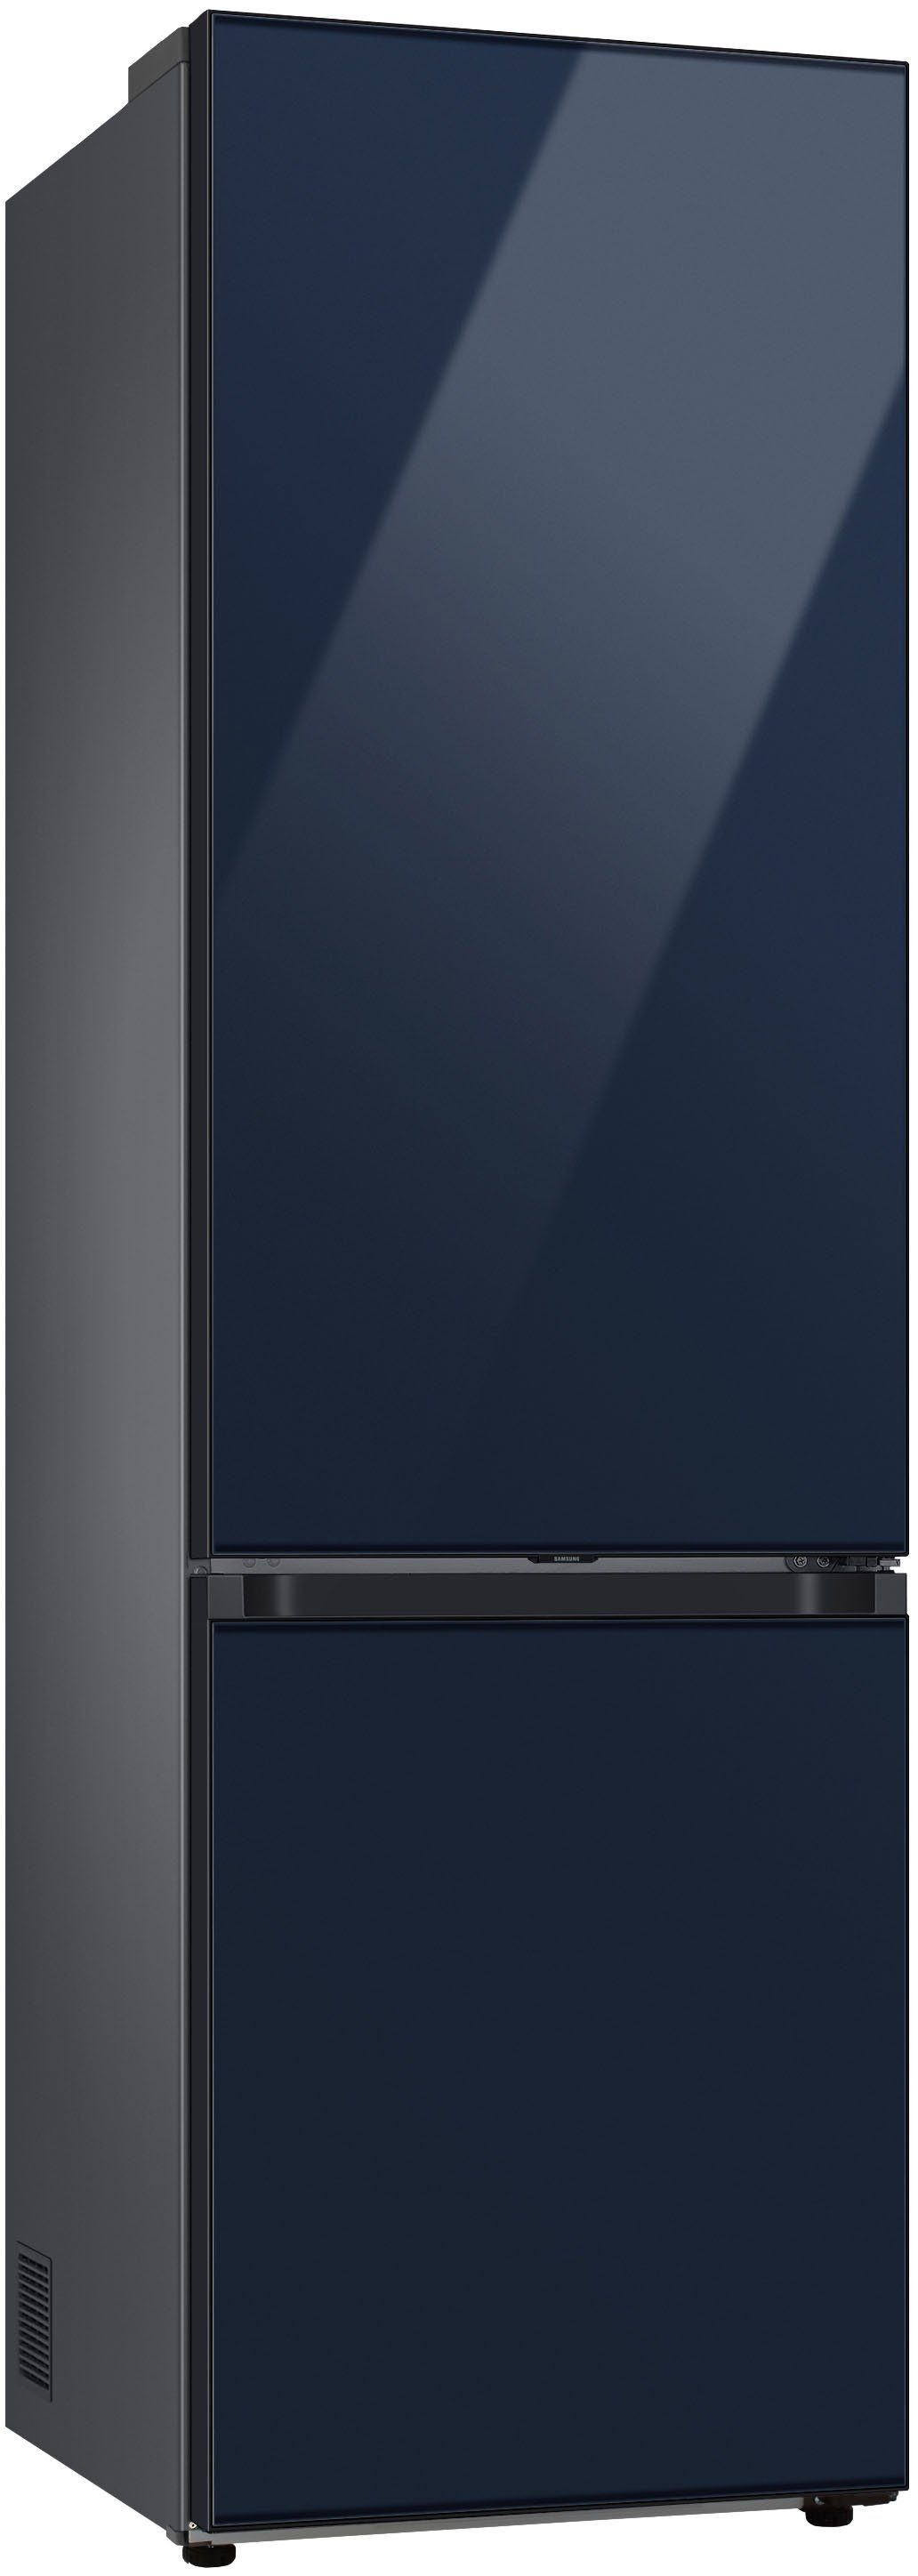 Samsung breit cm 203 RL38A6B6C41, Kühl-/Gefrierkombination 59,5 cm hoch, Bespoke